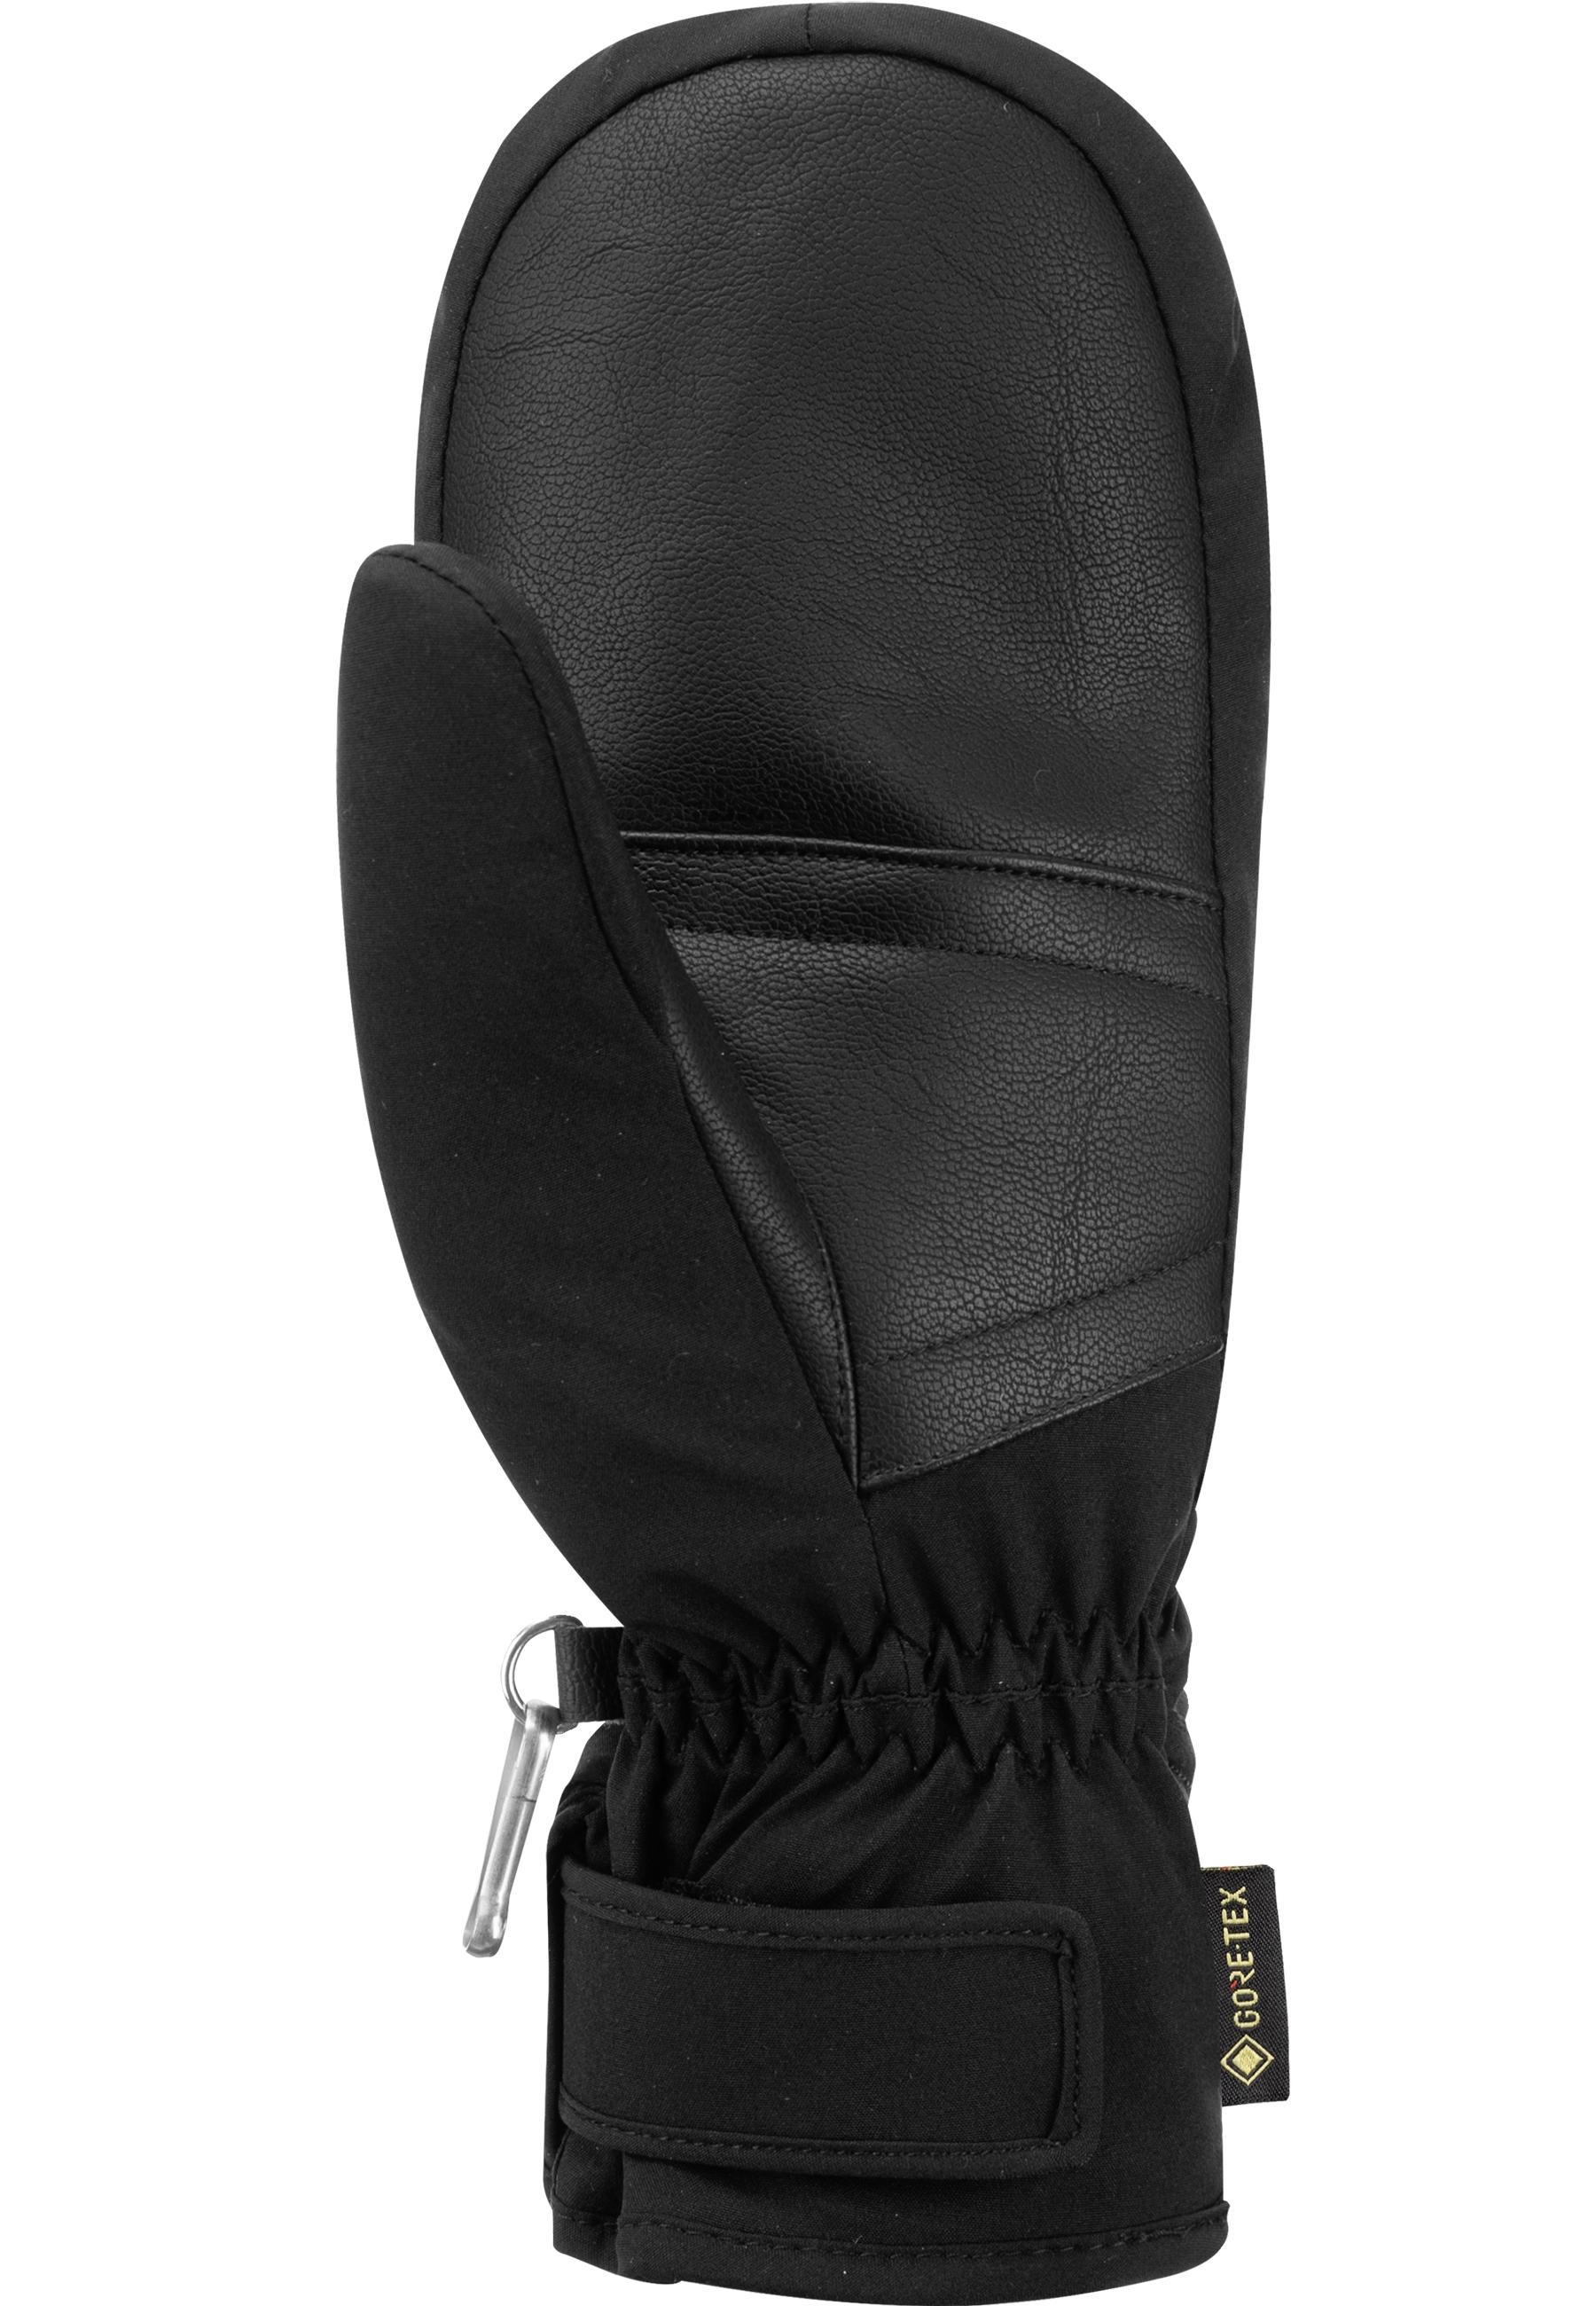 Reusch Susan GORE-TEX Mitten Outdoorhandschuhe 7700 black im Online Shop  von SportScheck kaufen